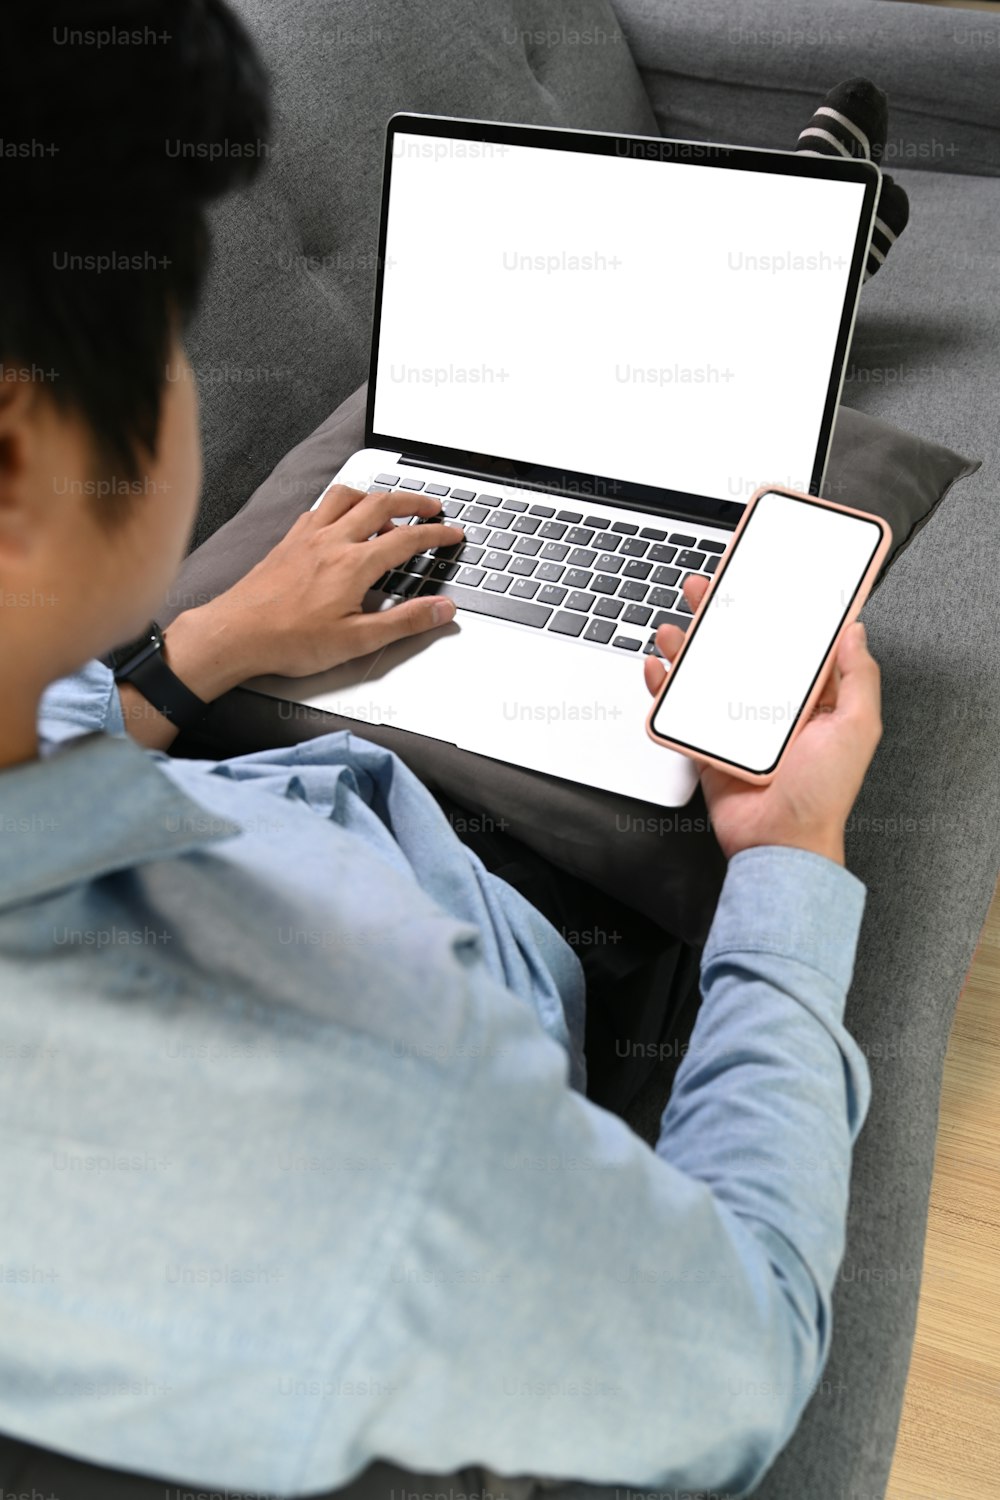 Vista sobre el hombro de un joven que descansa en el sofá que trabaja con una computadora portátil y usa un teléfono móvil.